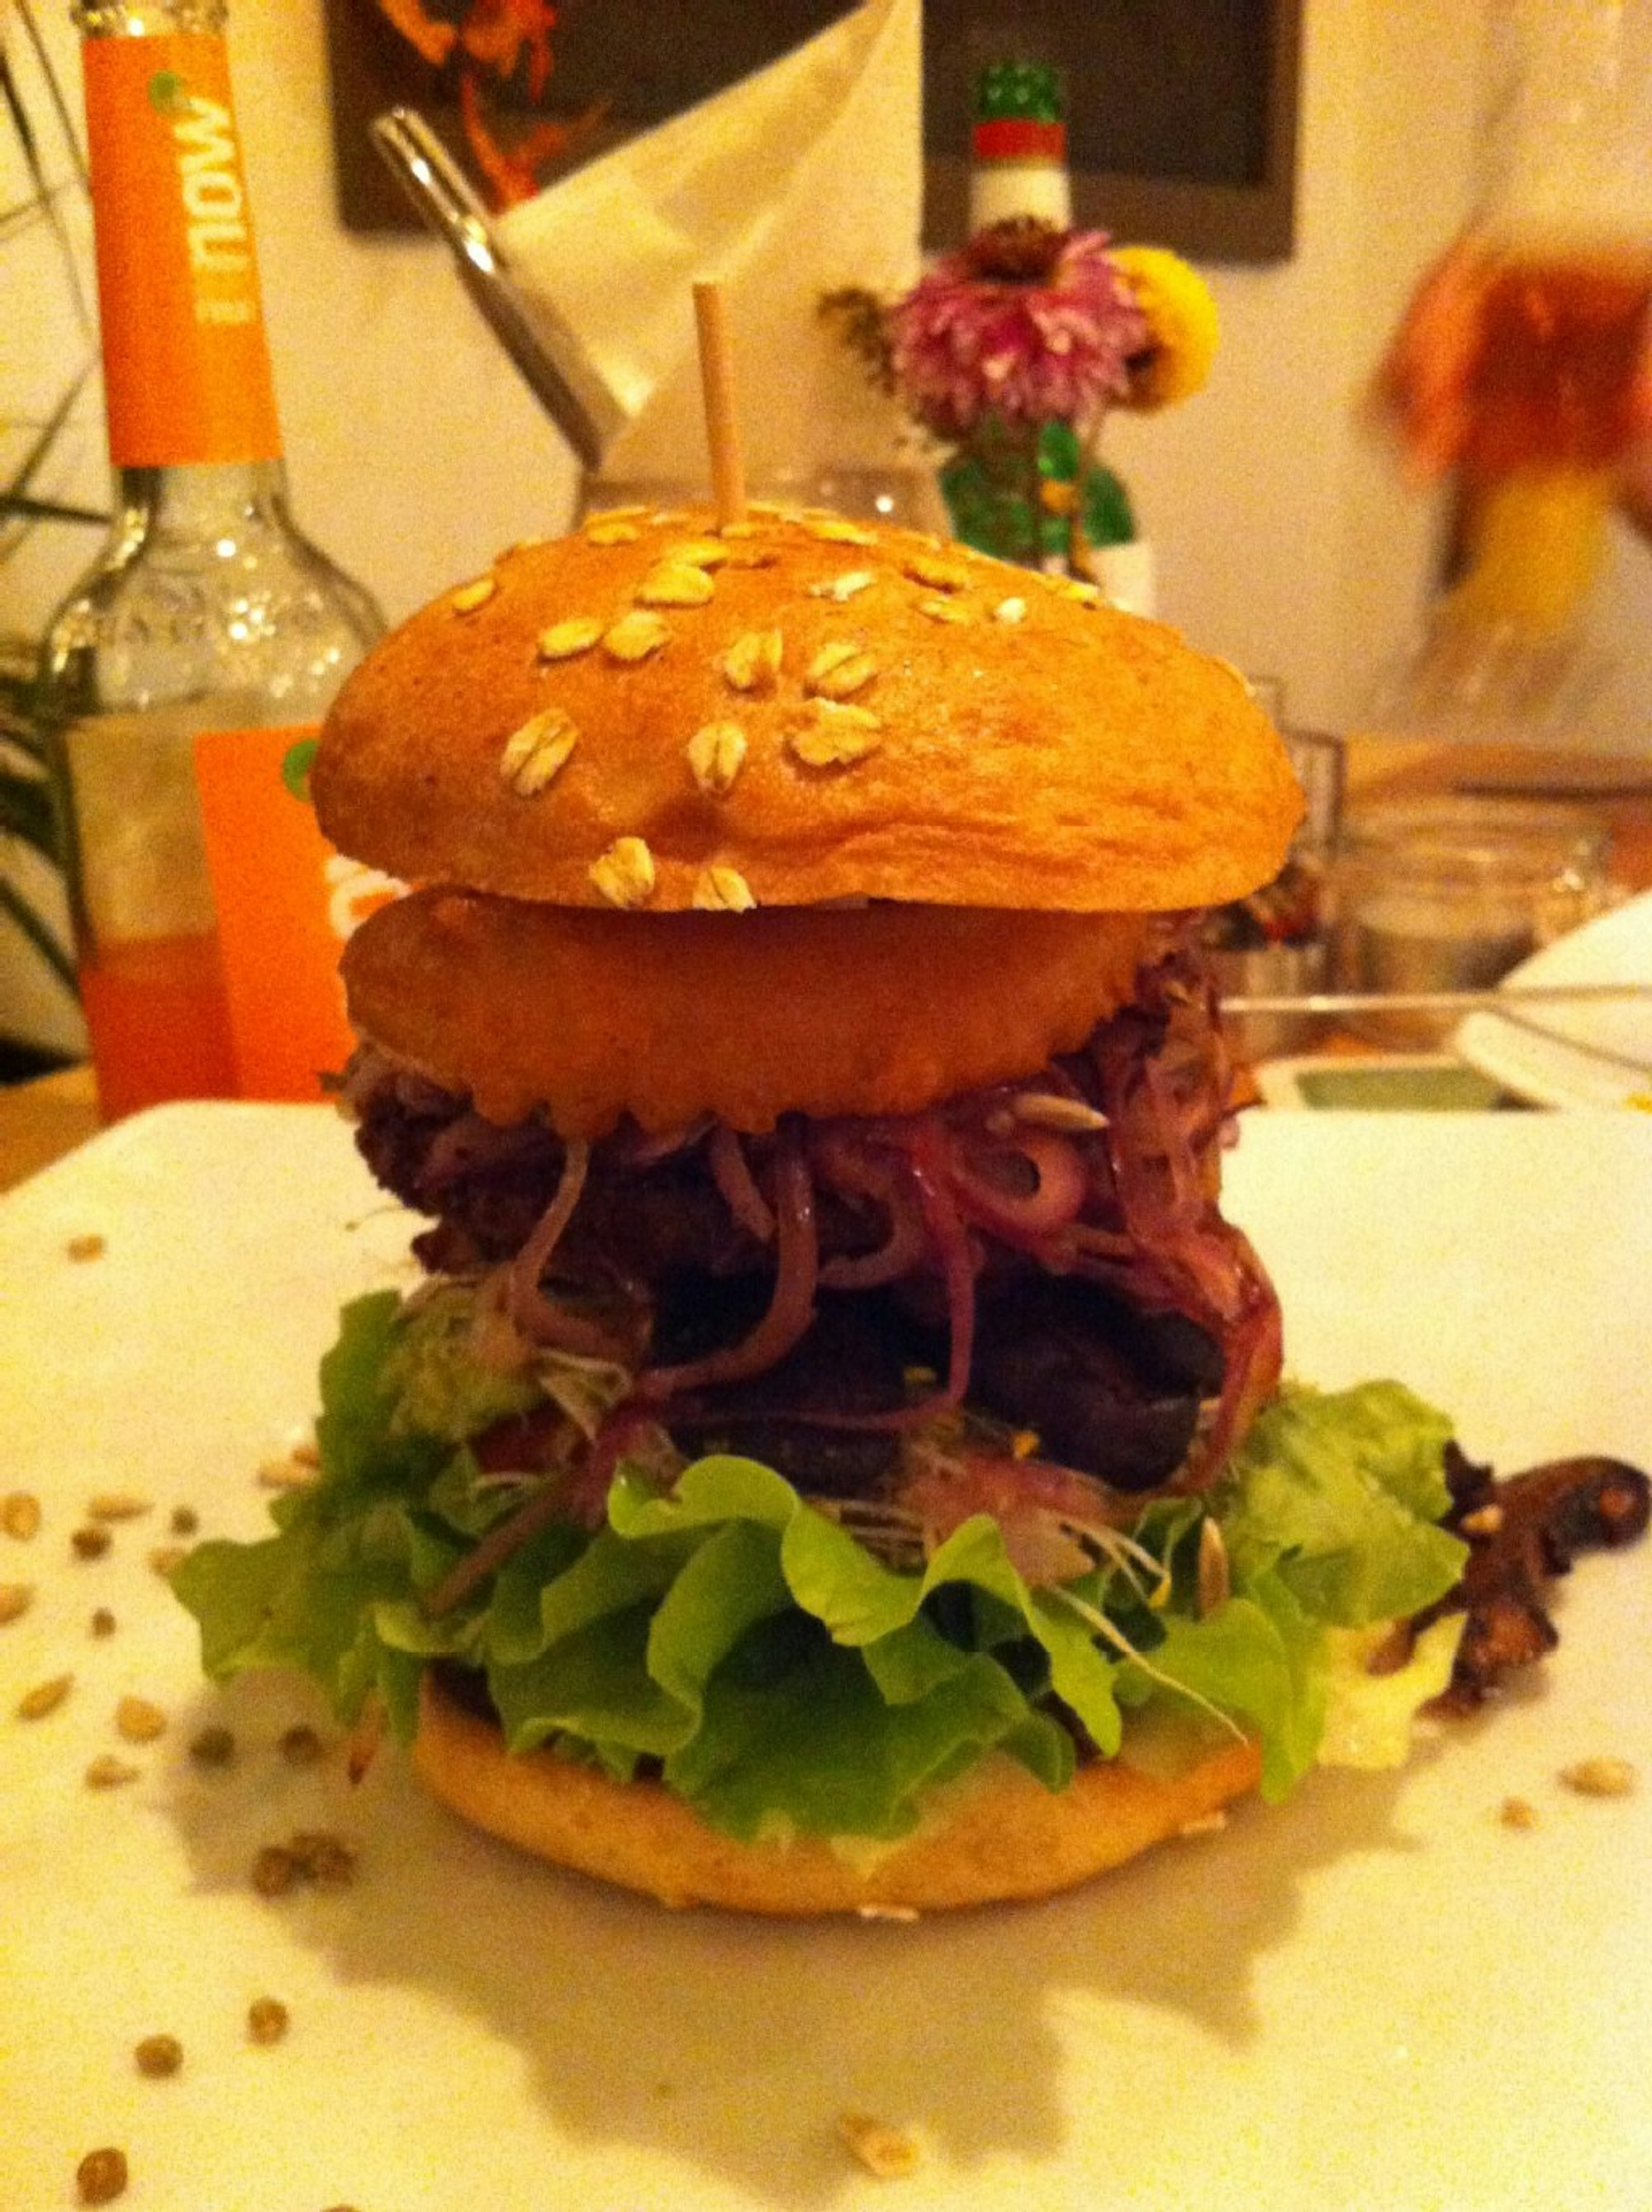 Vegan durch und durch - dieser Burger ist nicht nur optisch ein Genuss, sondern auch leckerer als viele seiner Kollegen mit Fleisch.